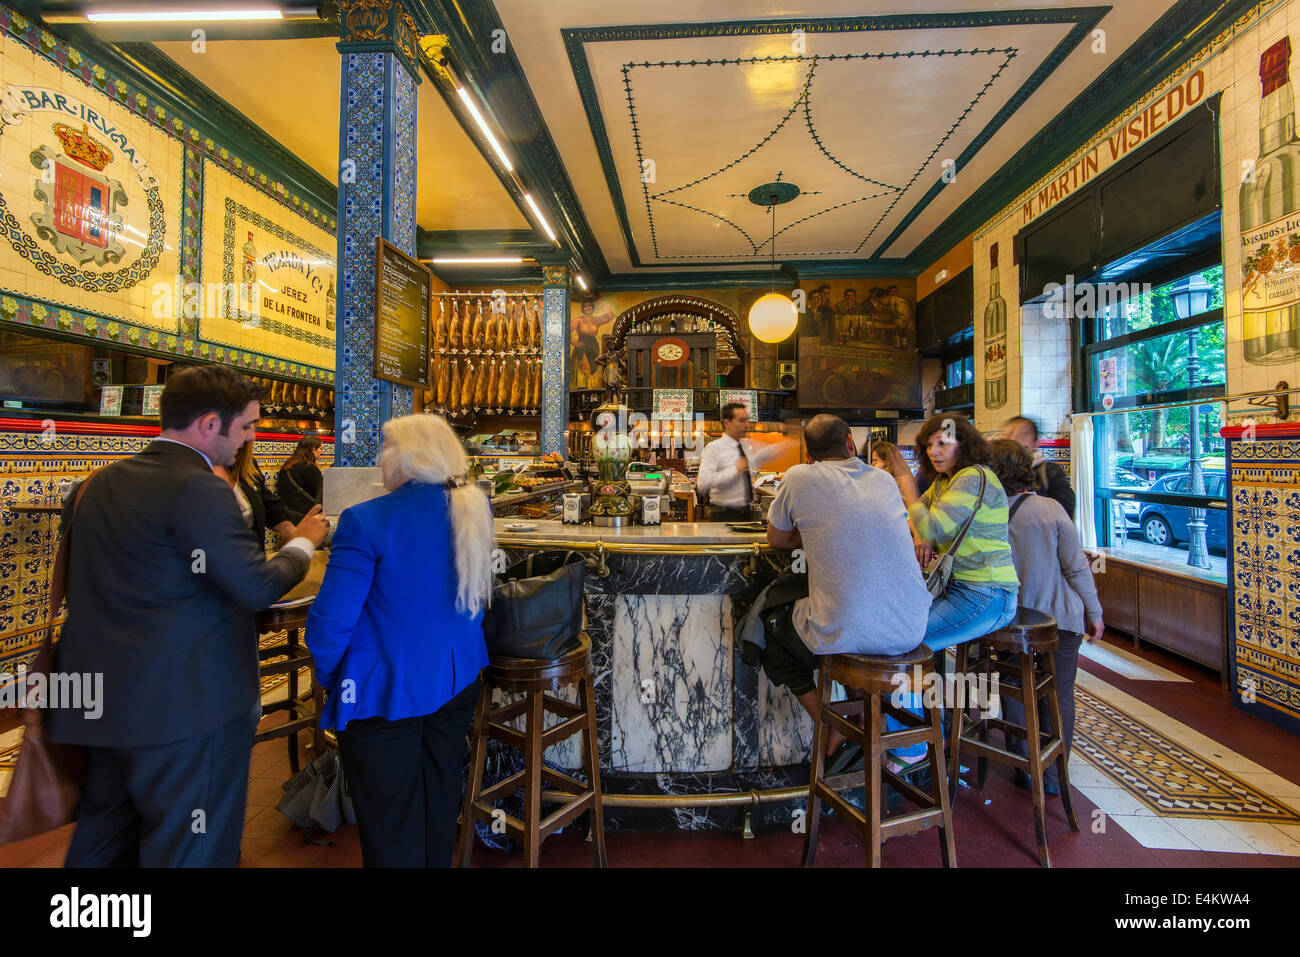 Innere der historischen Café Iruña, gegründet 1903, Bilbao, Baskenland, Spanien Stockfoto